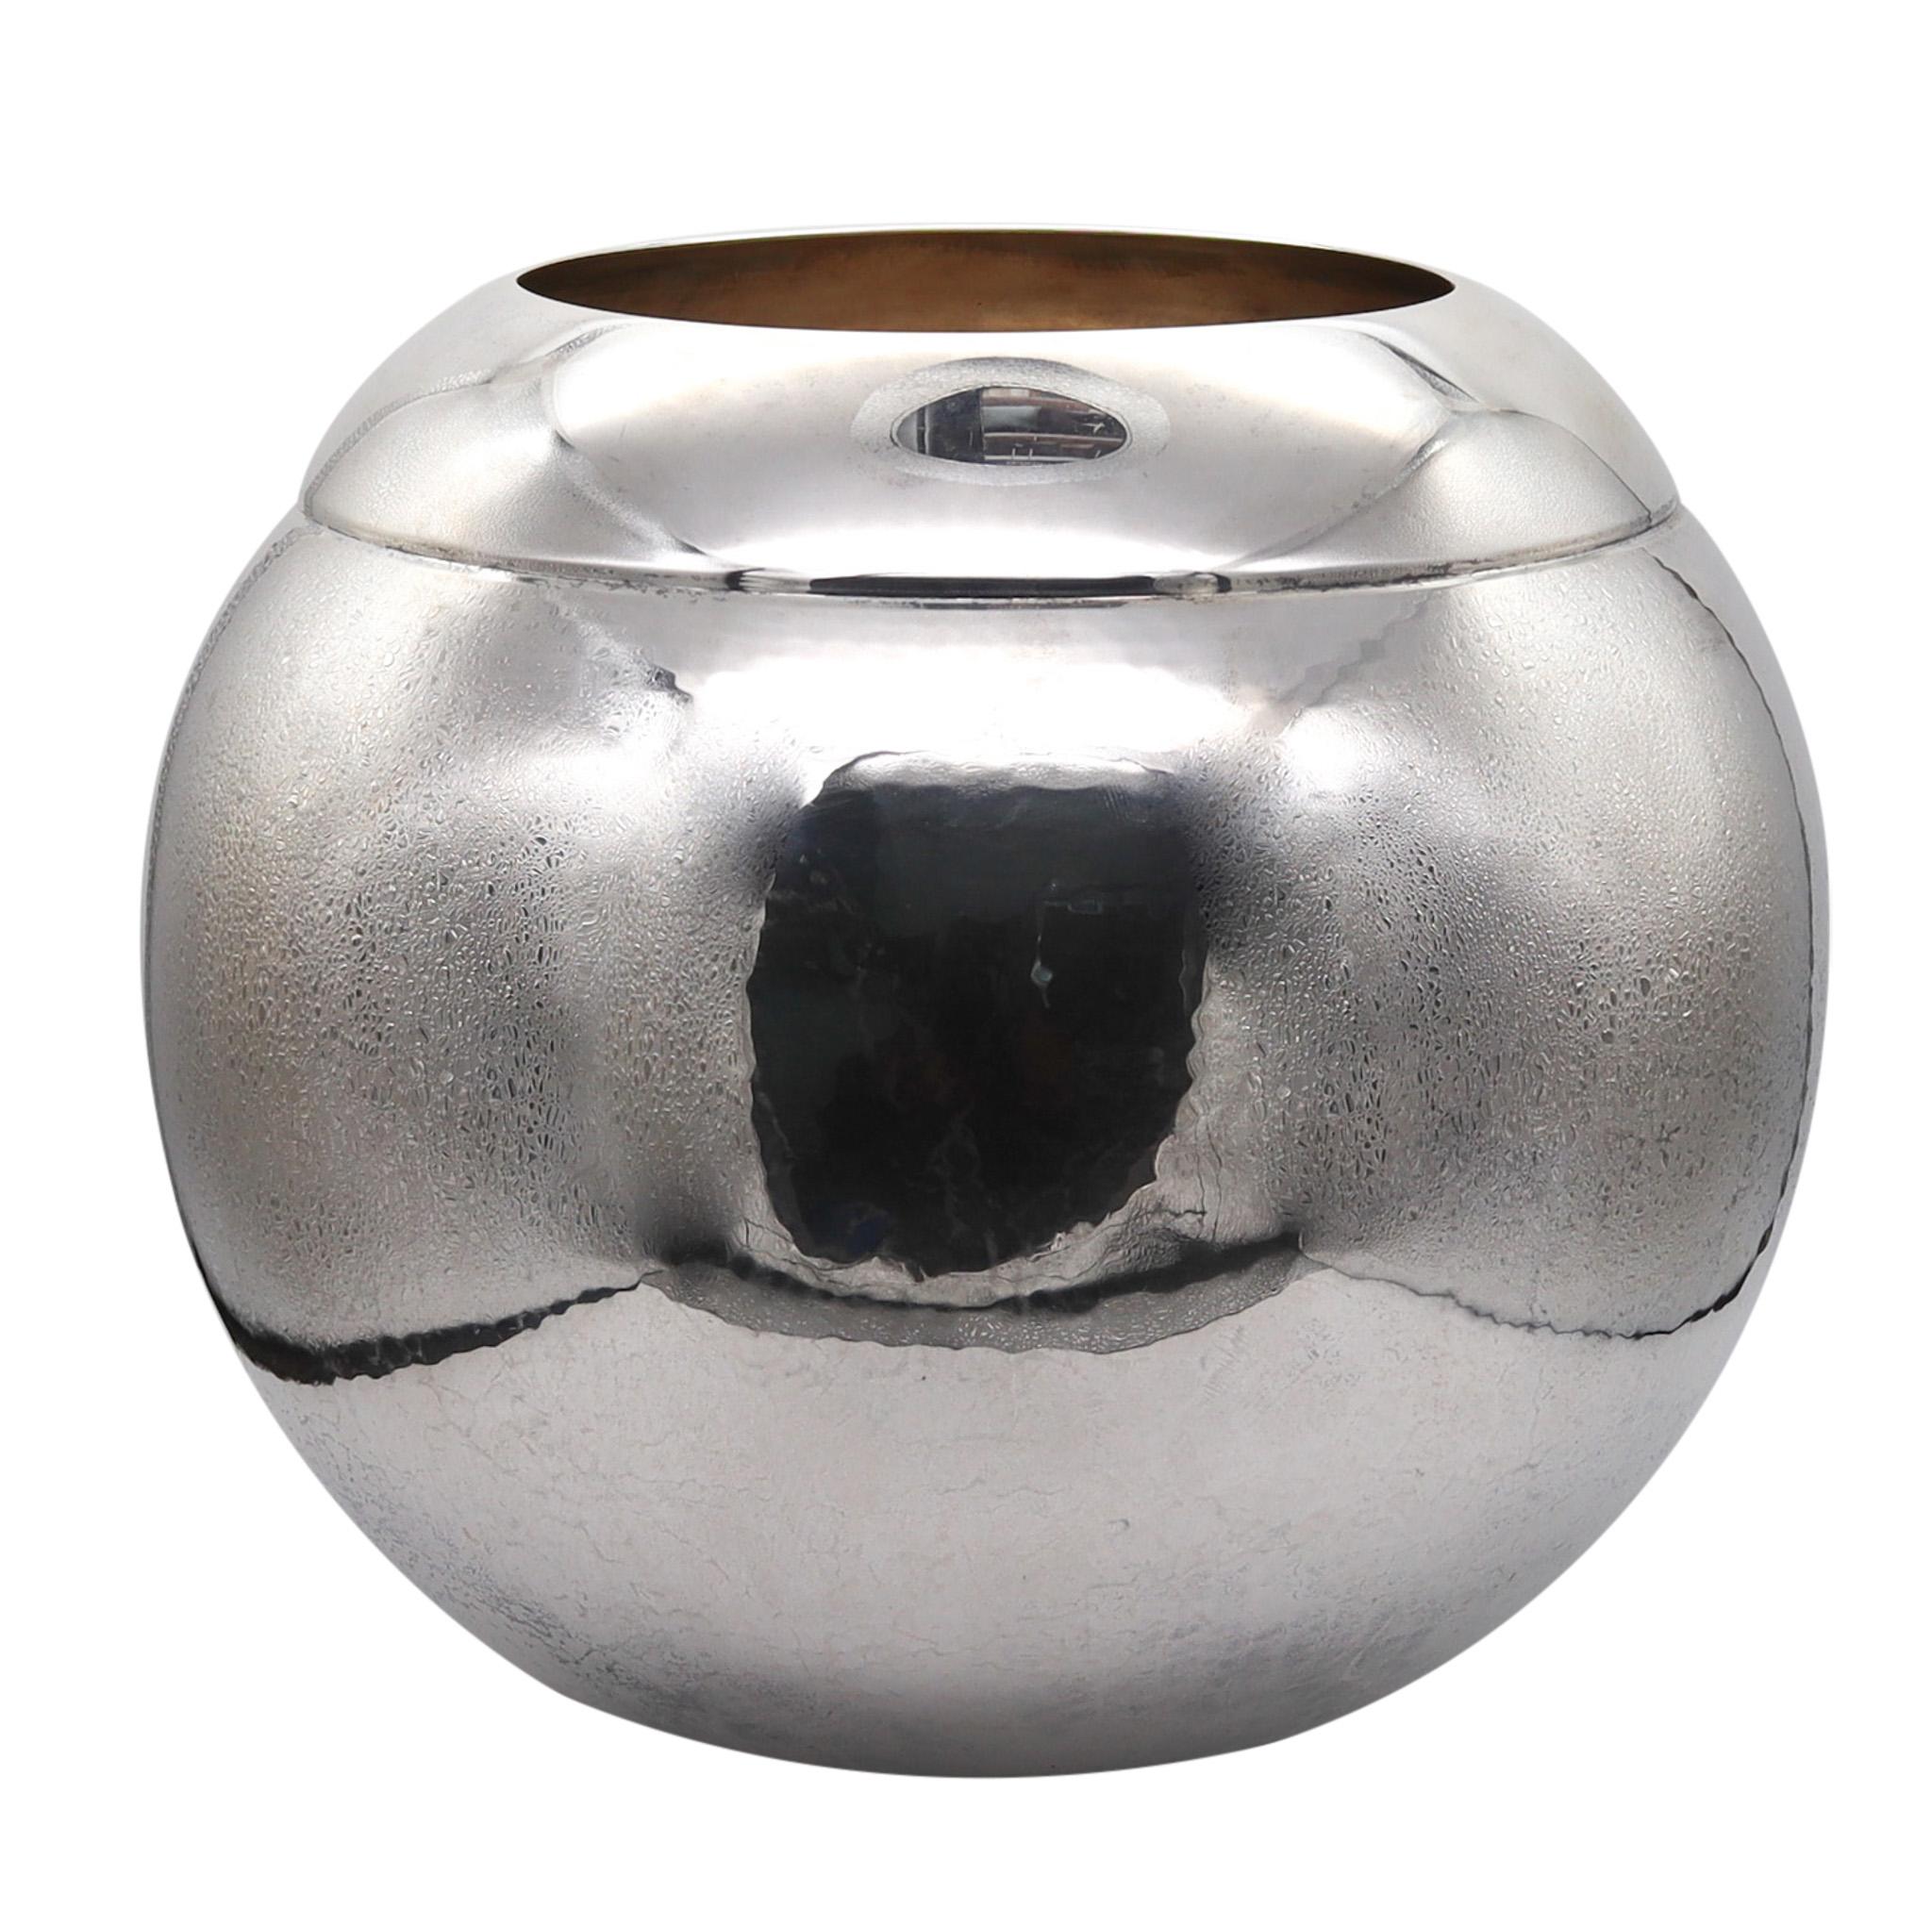 Silberne Vase, entworfen von Asprey of London.

Eine wunderschöne kugelförmige Dekorationsvase in Übergröße, die in London, England, von Asprey hergestellt wurde. Er wurde mit modernistischen Mustern aus sehr feinem massivem 925er/999er